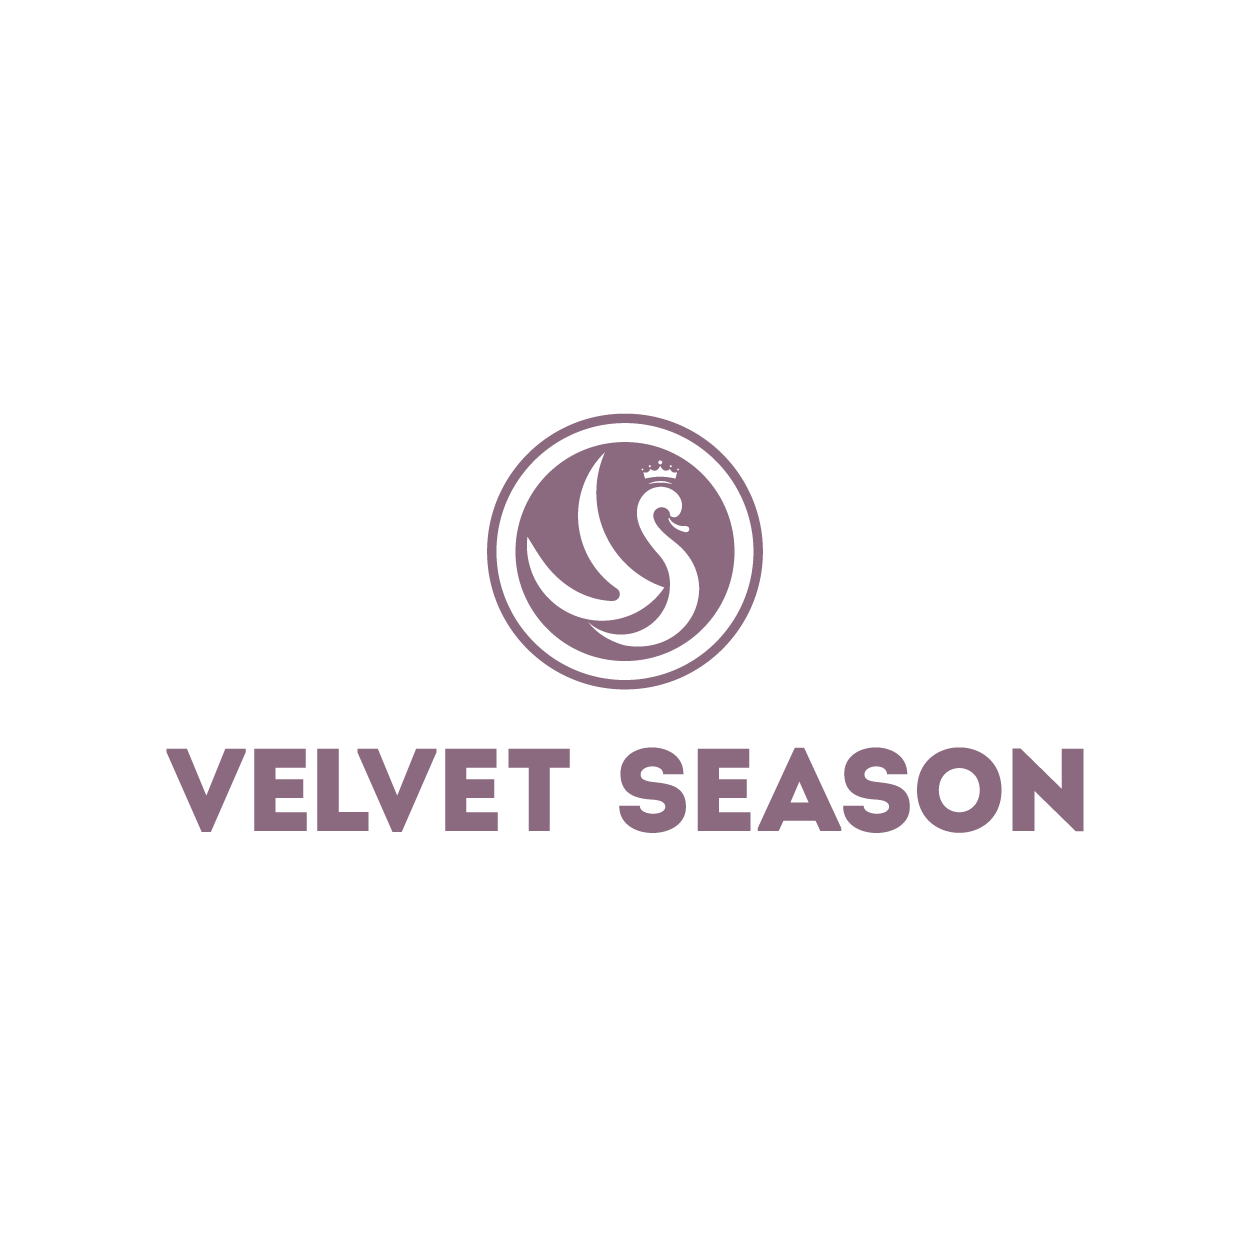 Velvet Season